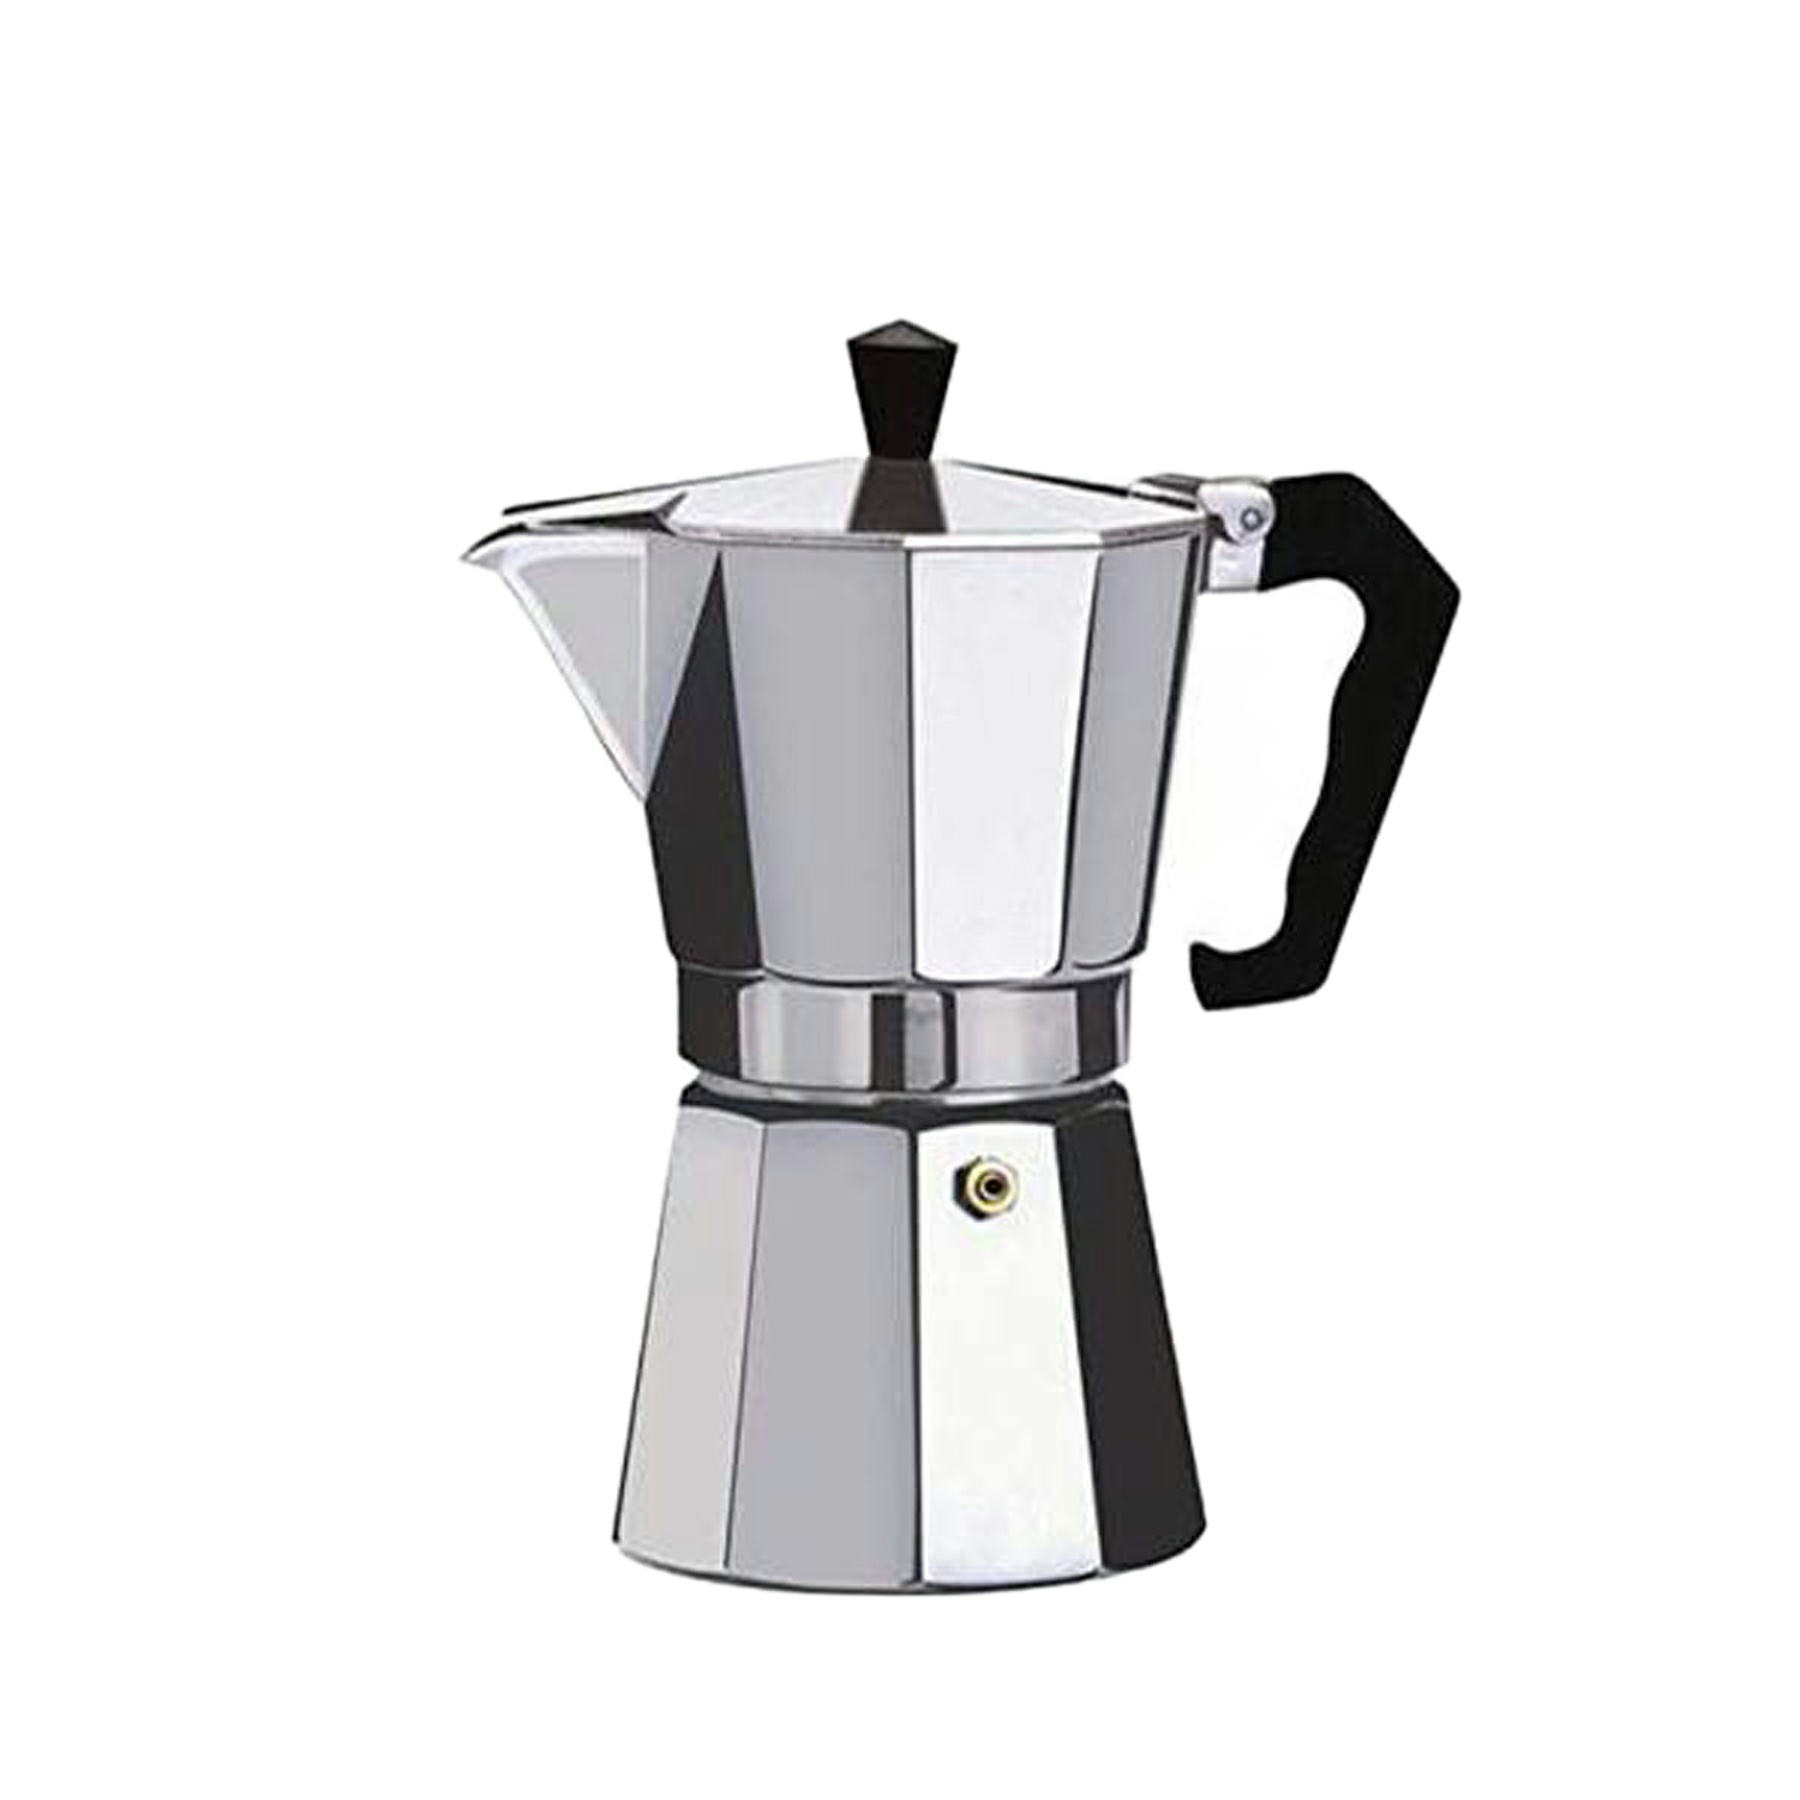 نقد و بررسی قهوه جوش مدل coffee 6 cup کد 34004 توسط خریداران